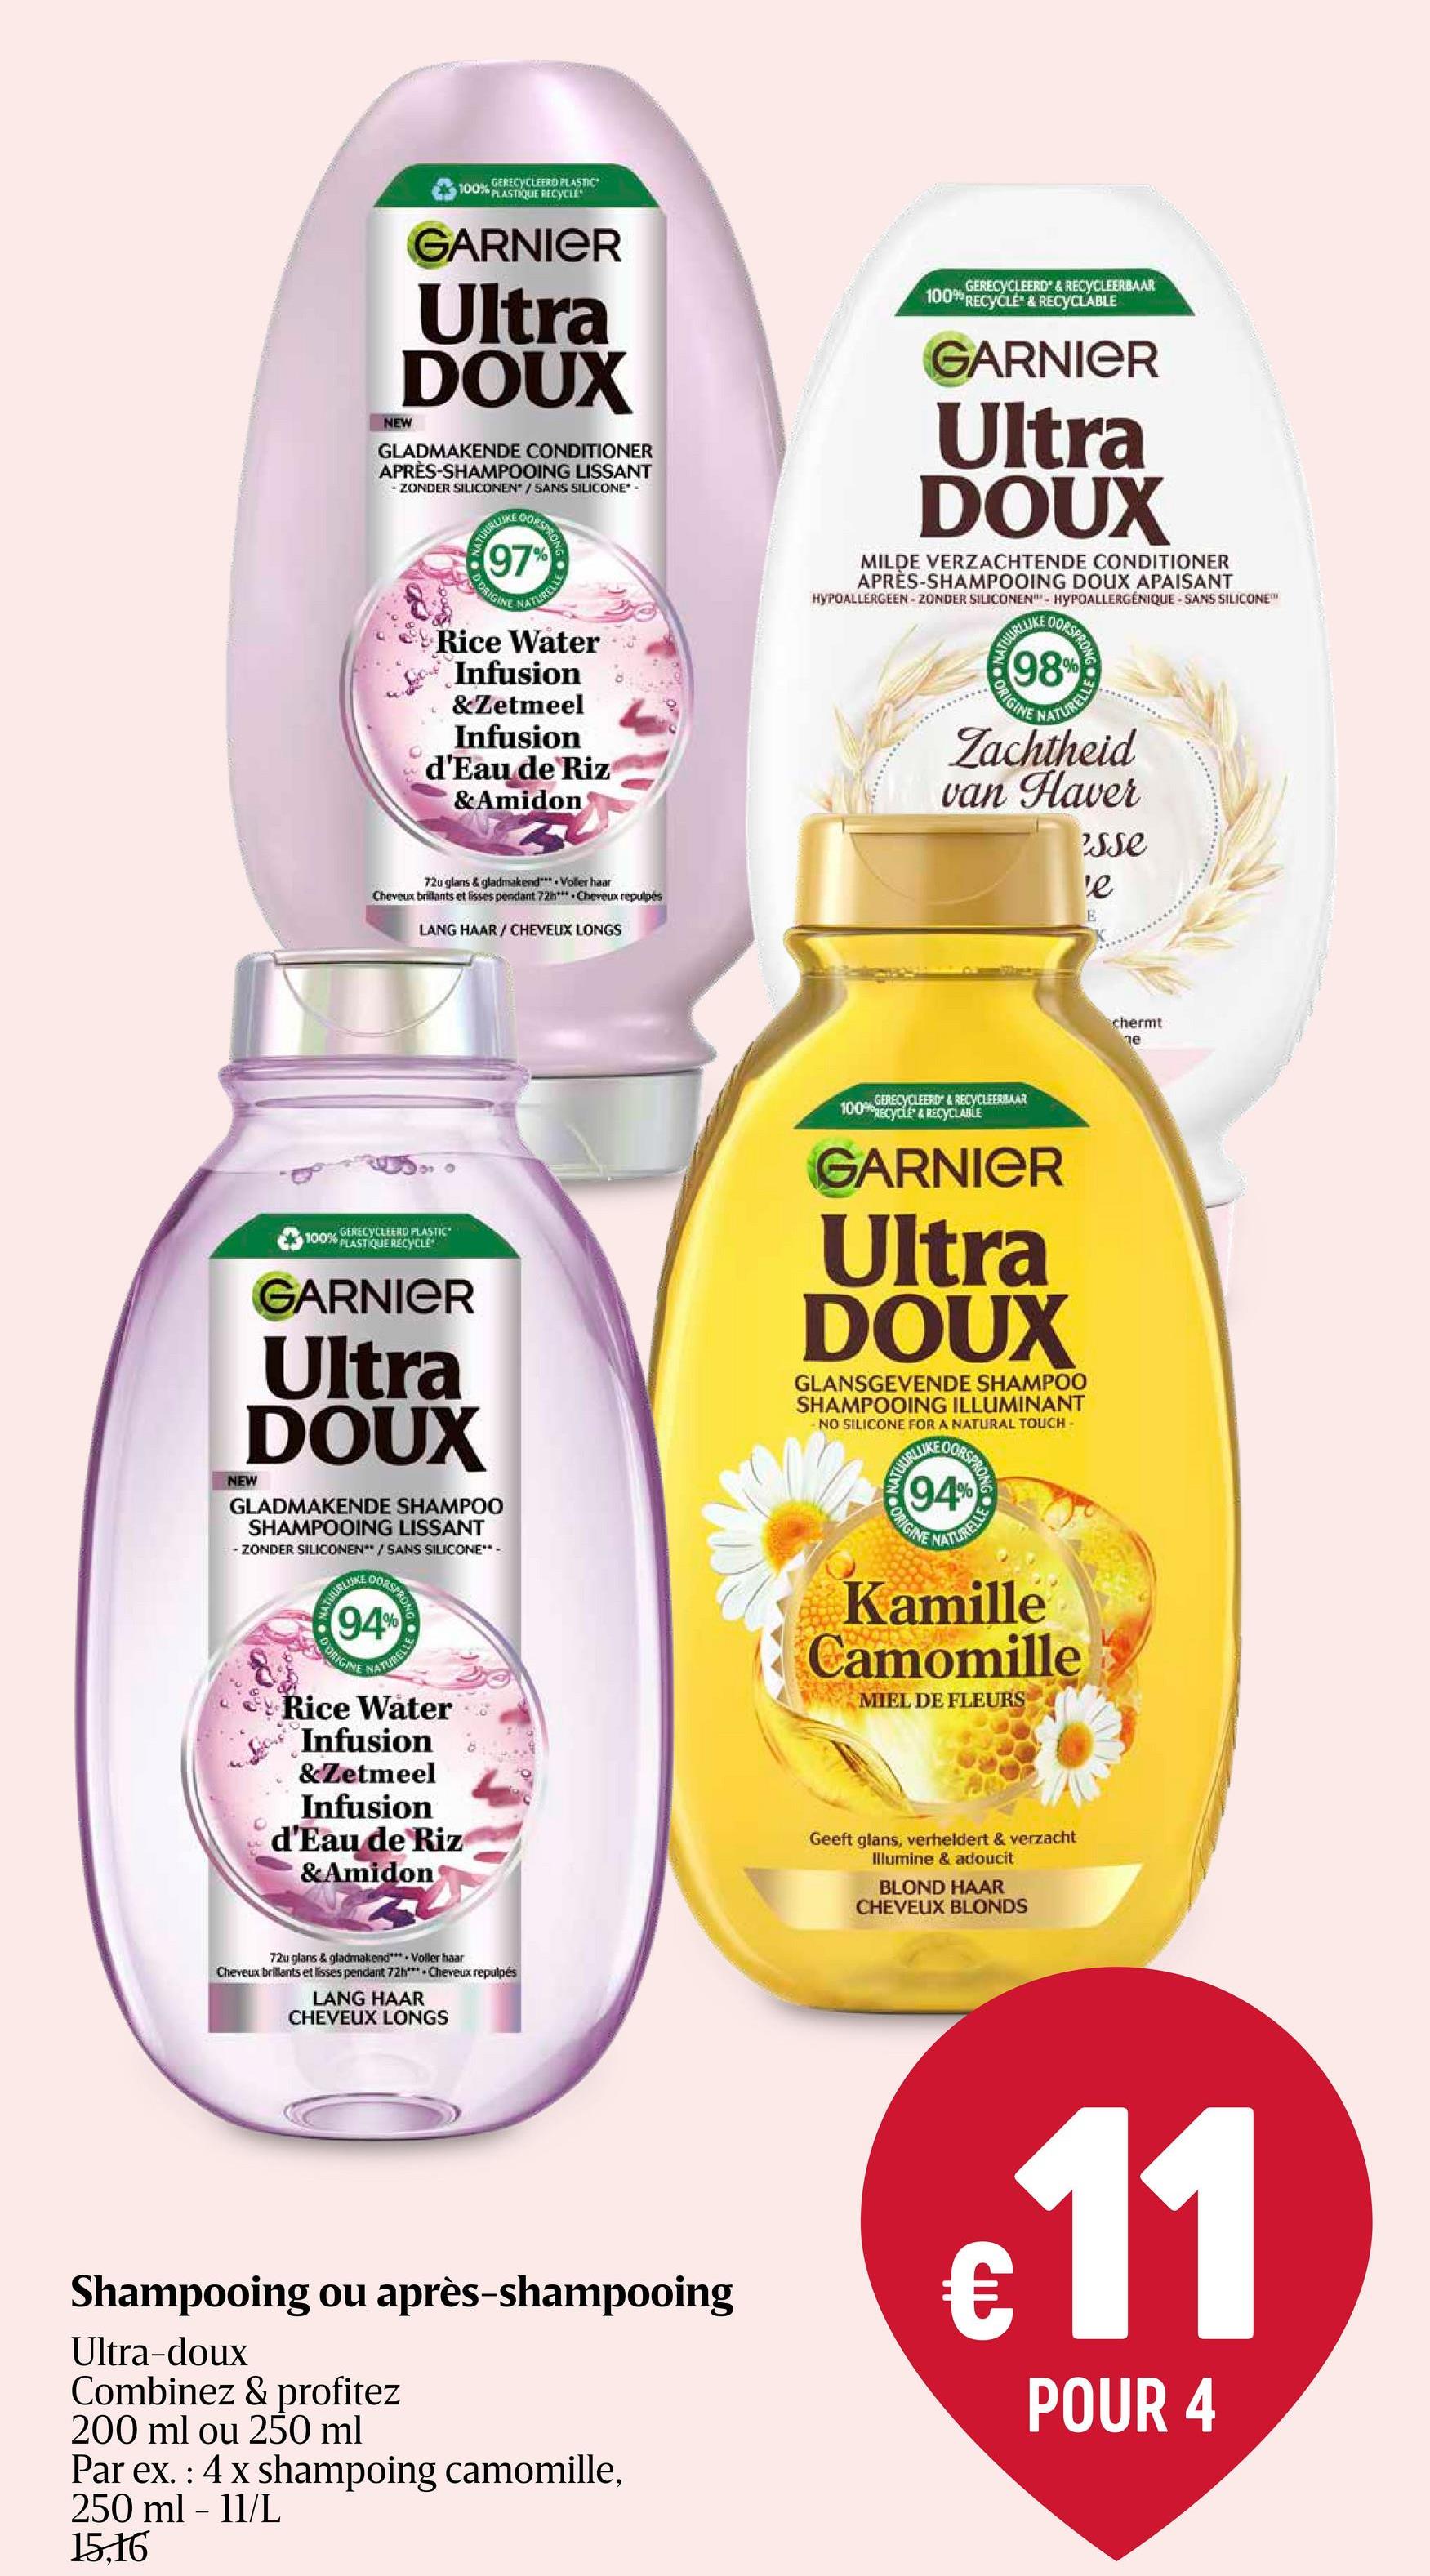 Shampooing | Gingembre Garnier Ultra Doux Levendige Gember - Shampoo 250ml - beschadigd haar